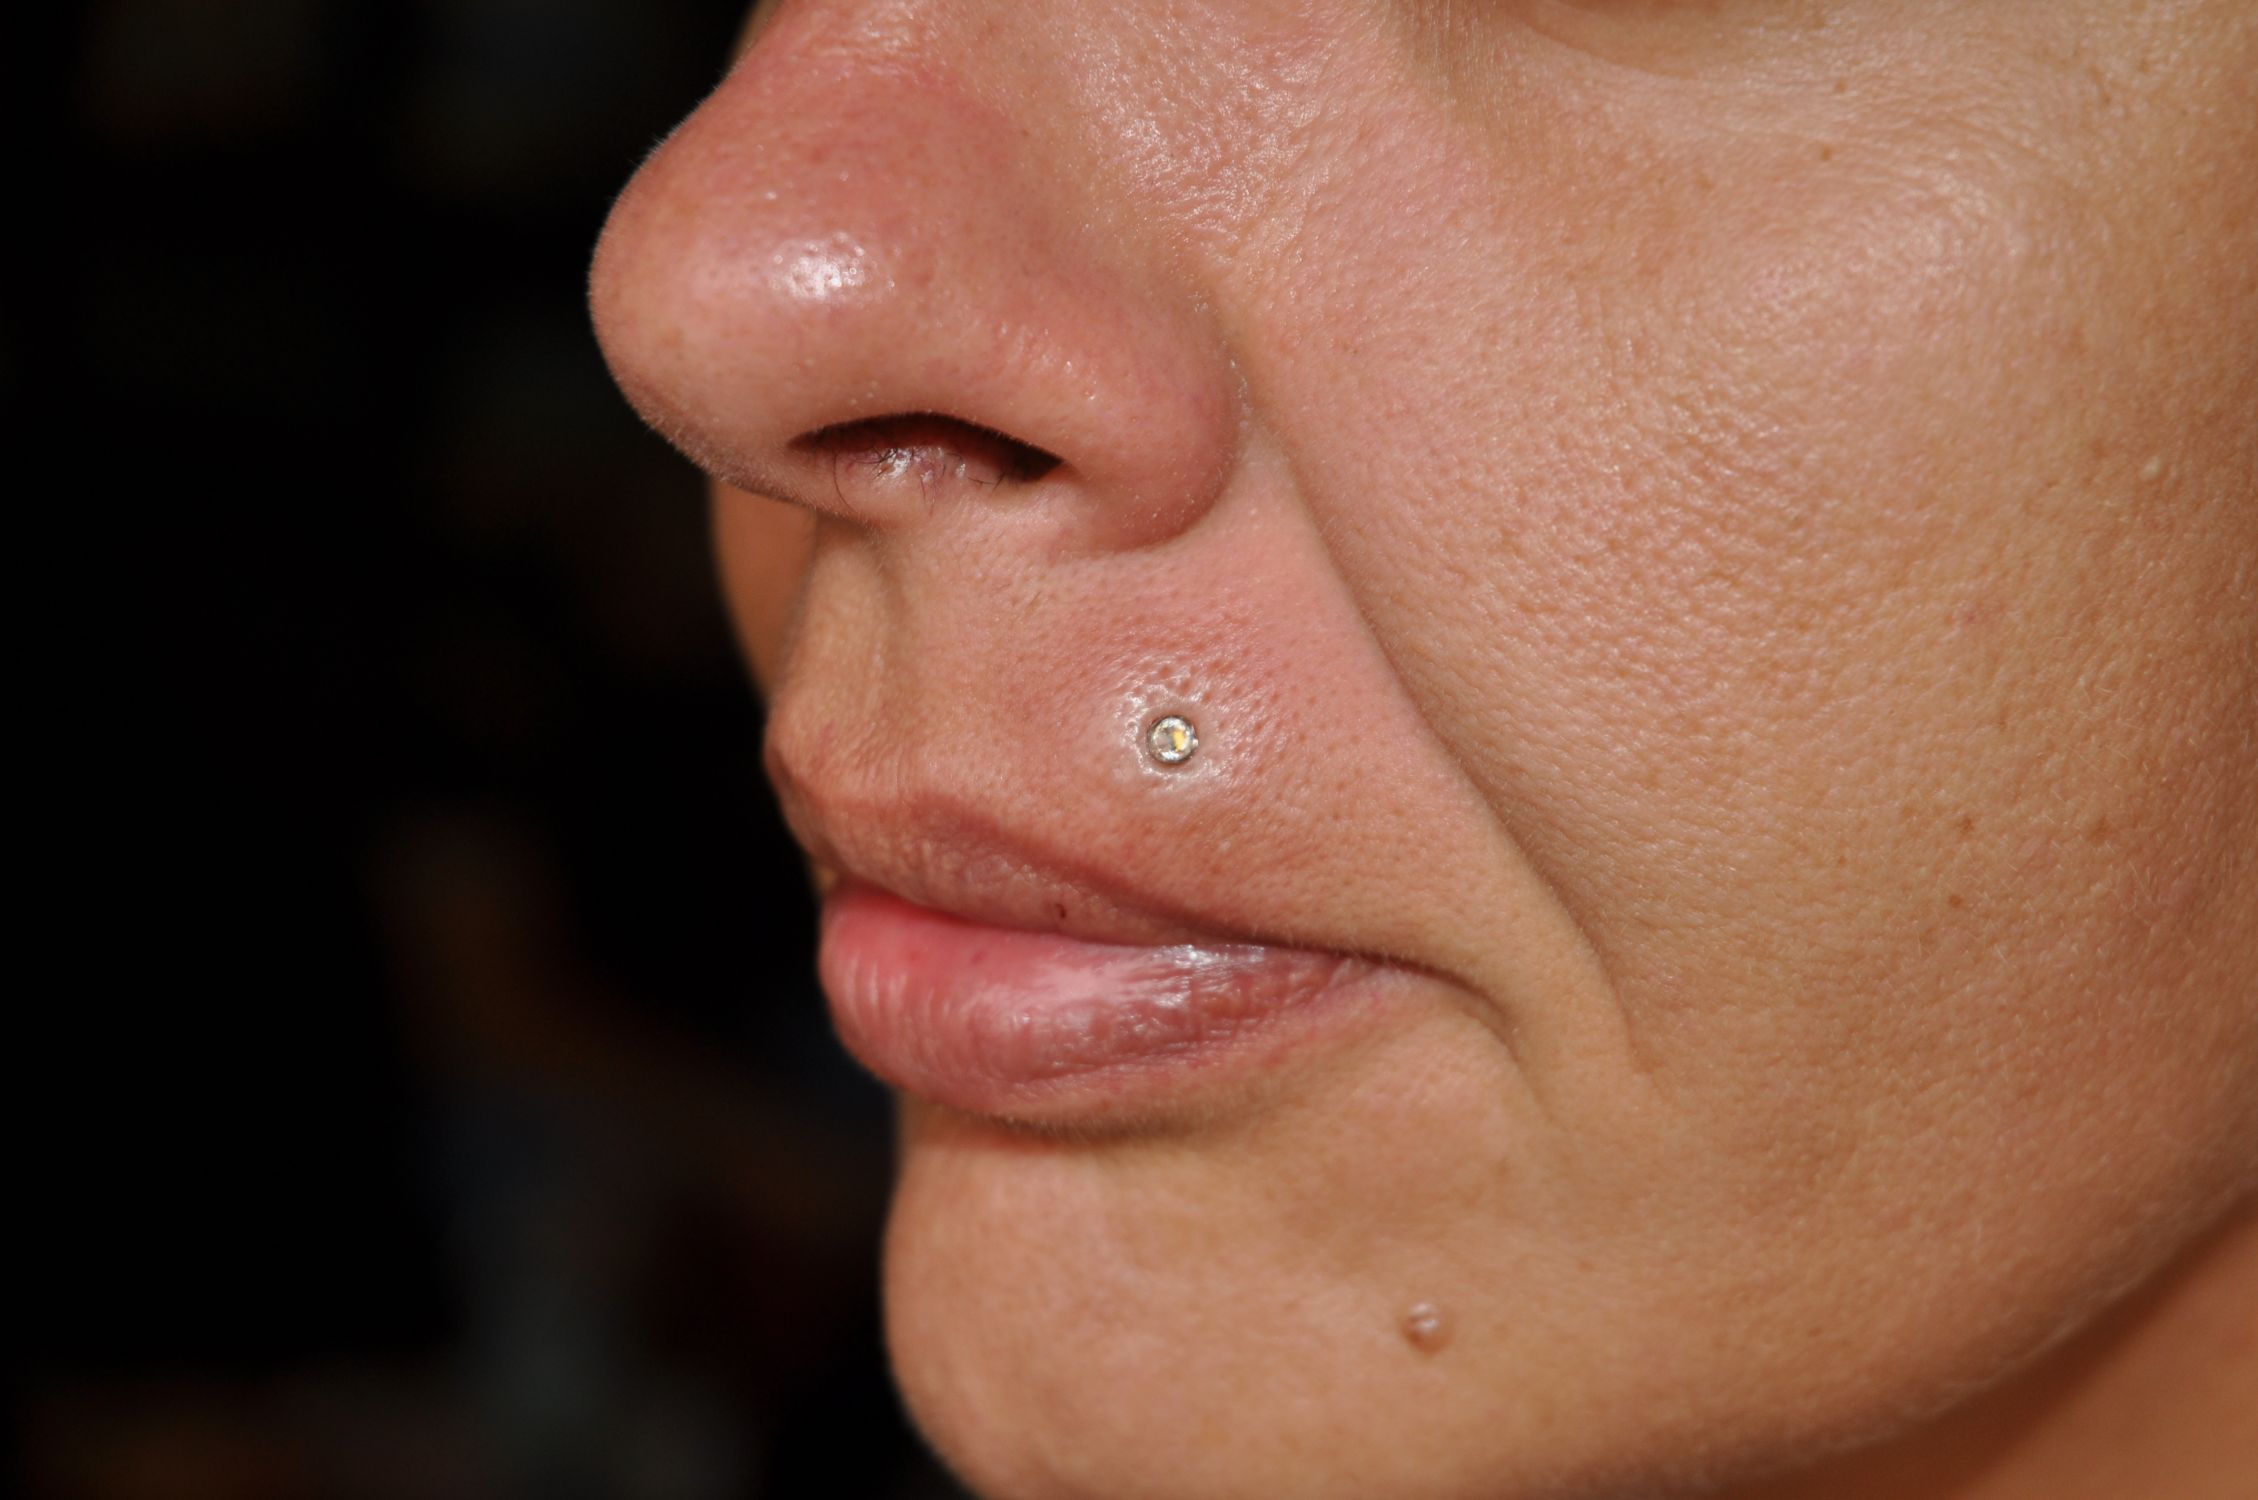 Microdermal piercing